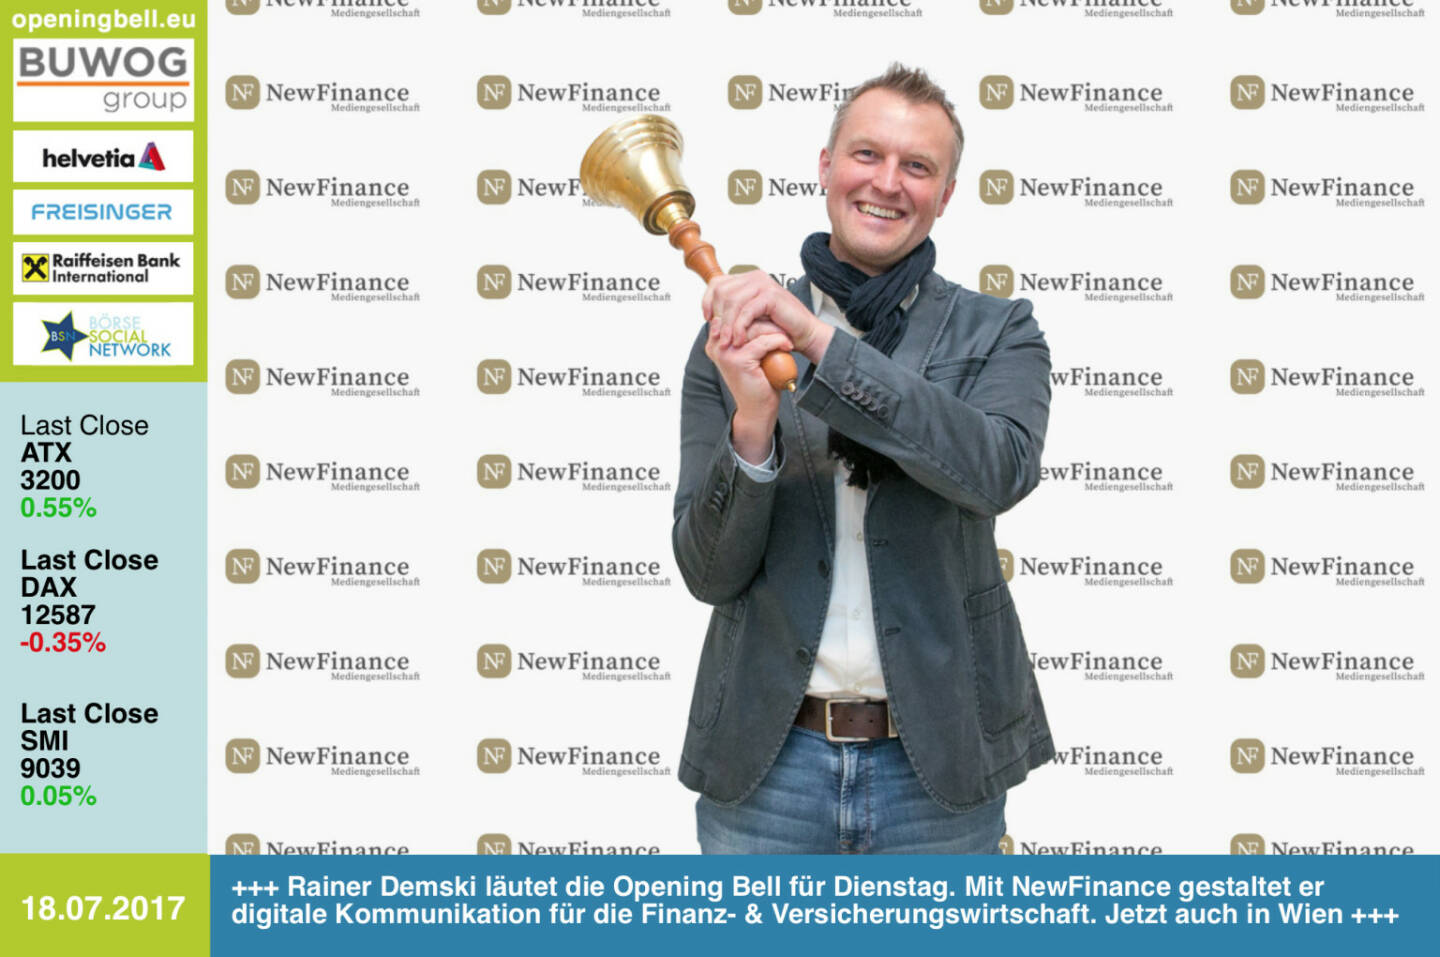 #openingbell am 18.7.: Rainer Demski läutet die Opening Bell für Dienstag. Mit NewFinance gestaltet er digitale Kommunikation für die Finanz- & Versicherungswirtschaft. Jetzt auch in Wien http://newfinance.at https://www.facebook.com/groups/GeldanlageNetwork/ #goboersewien 